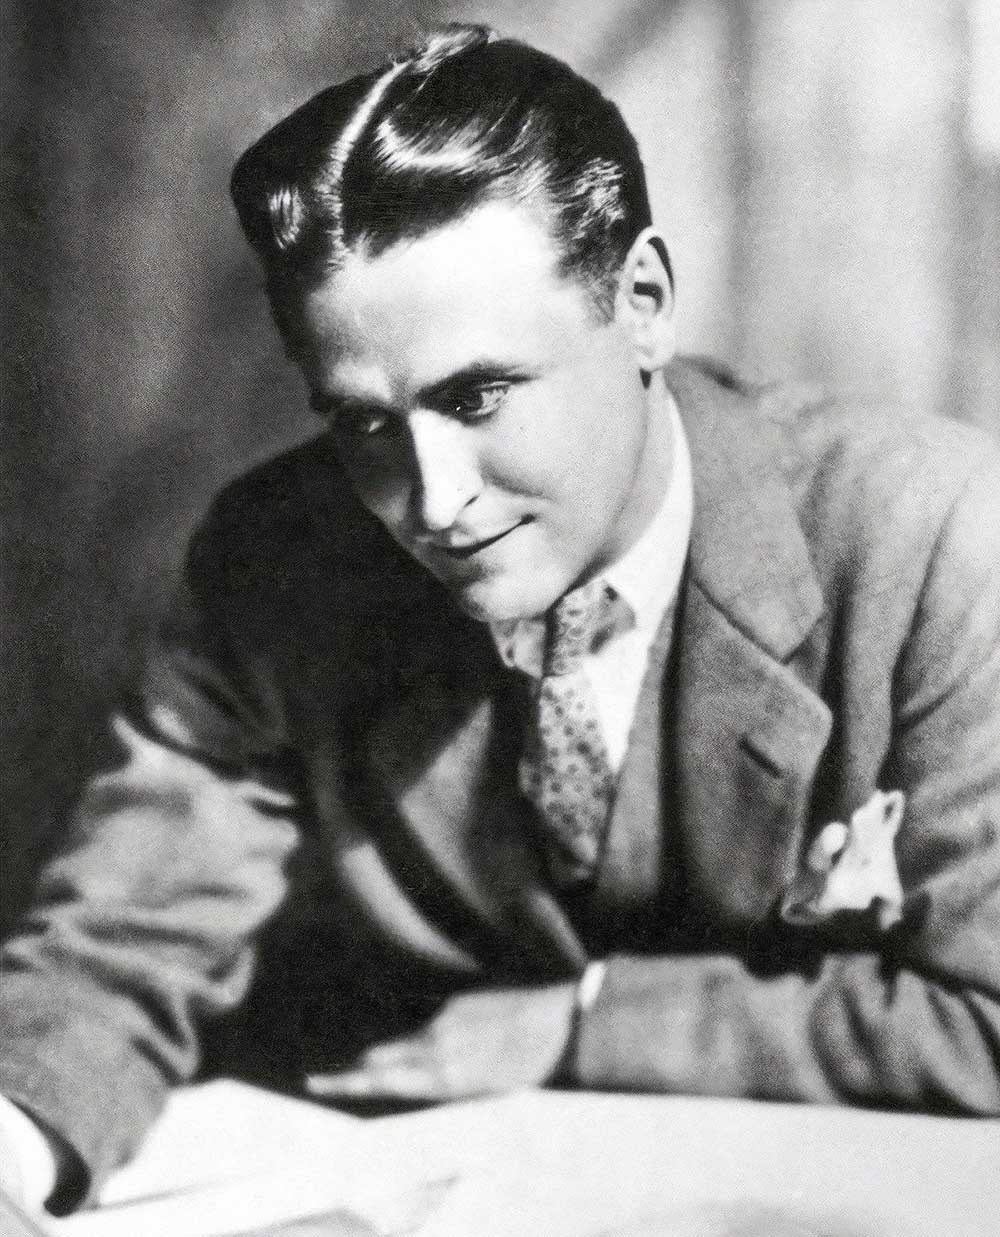 F Scott Fitzgerald in the 1920s